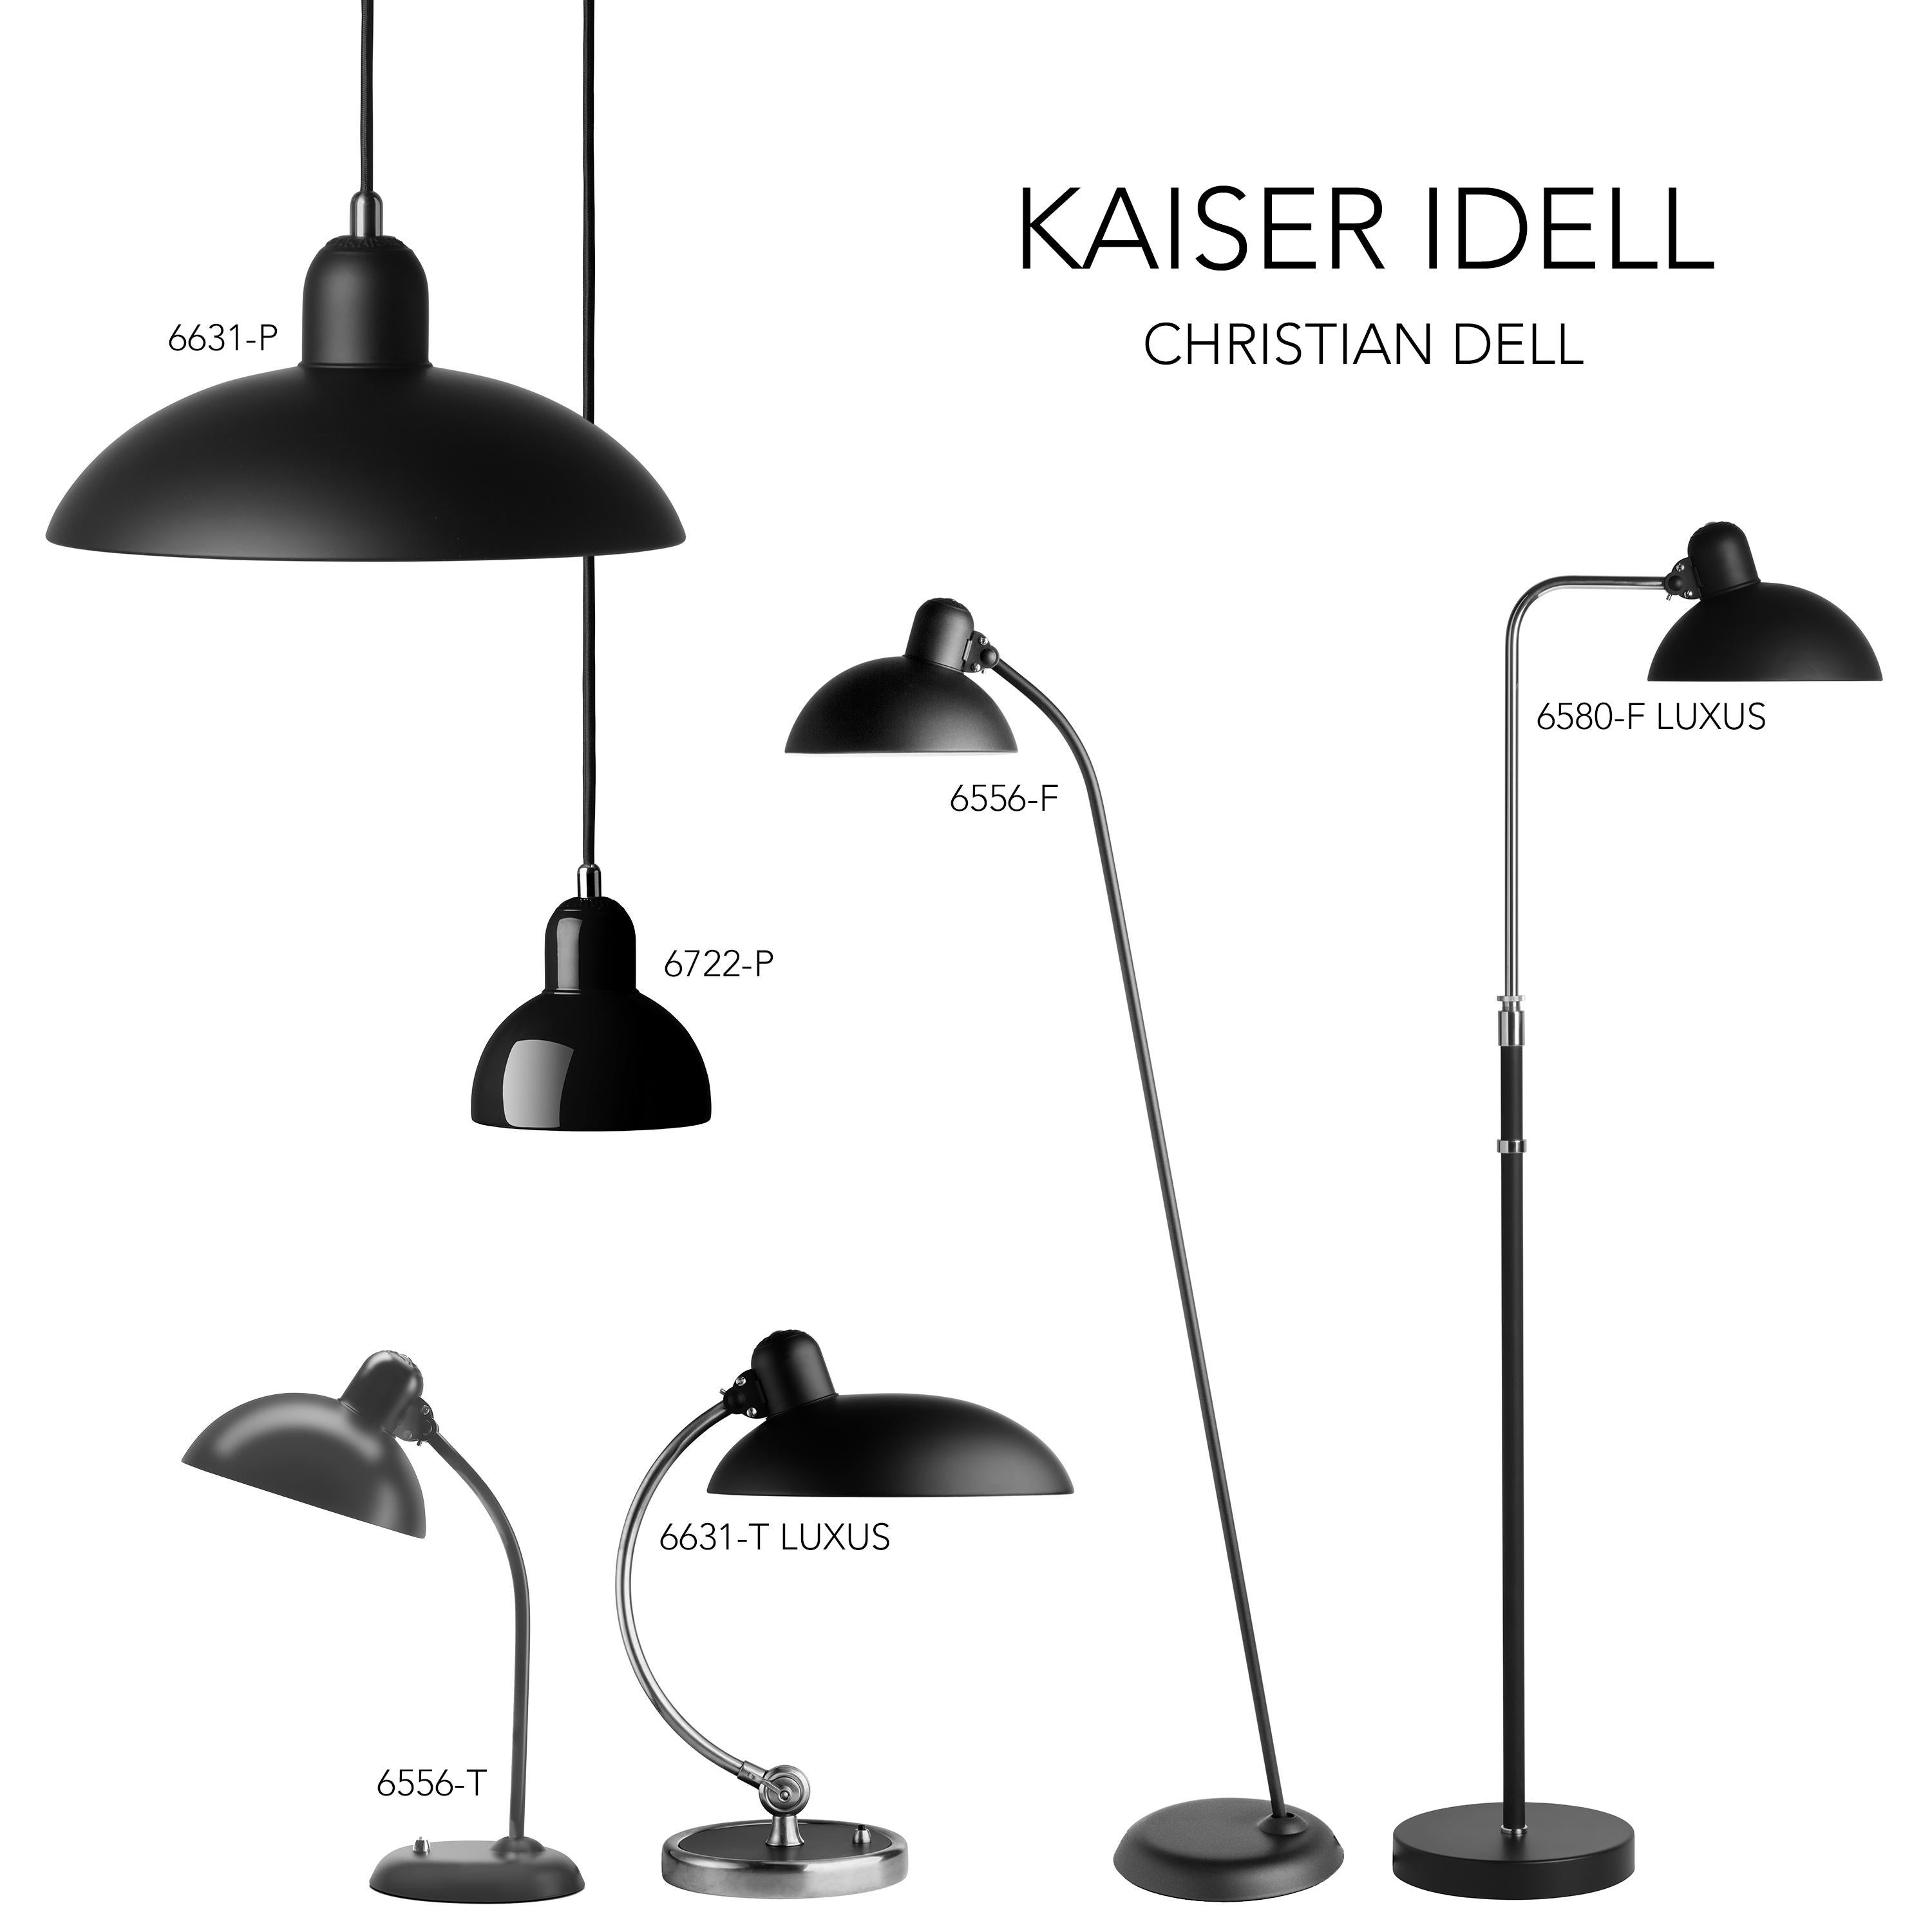 Christian Dell 'Kaiser Idell 6722-P' Pendant for Fritz Hansen in Soft Ochre For Sale 9